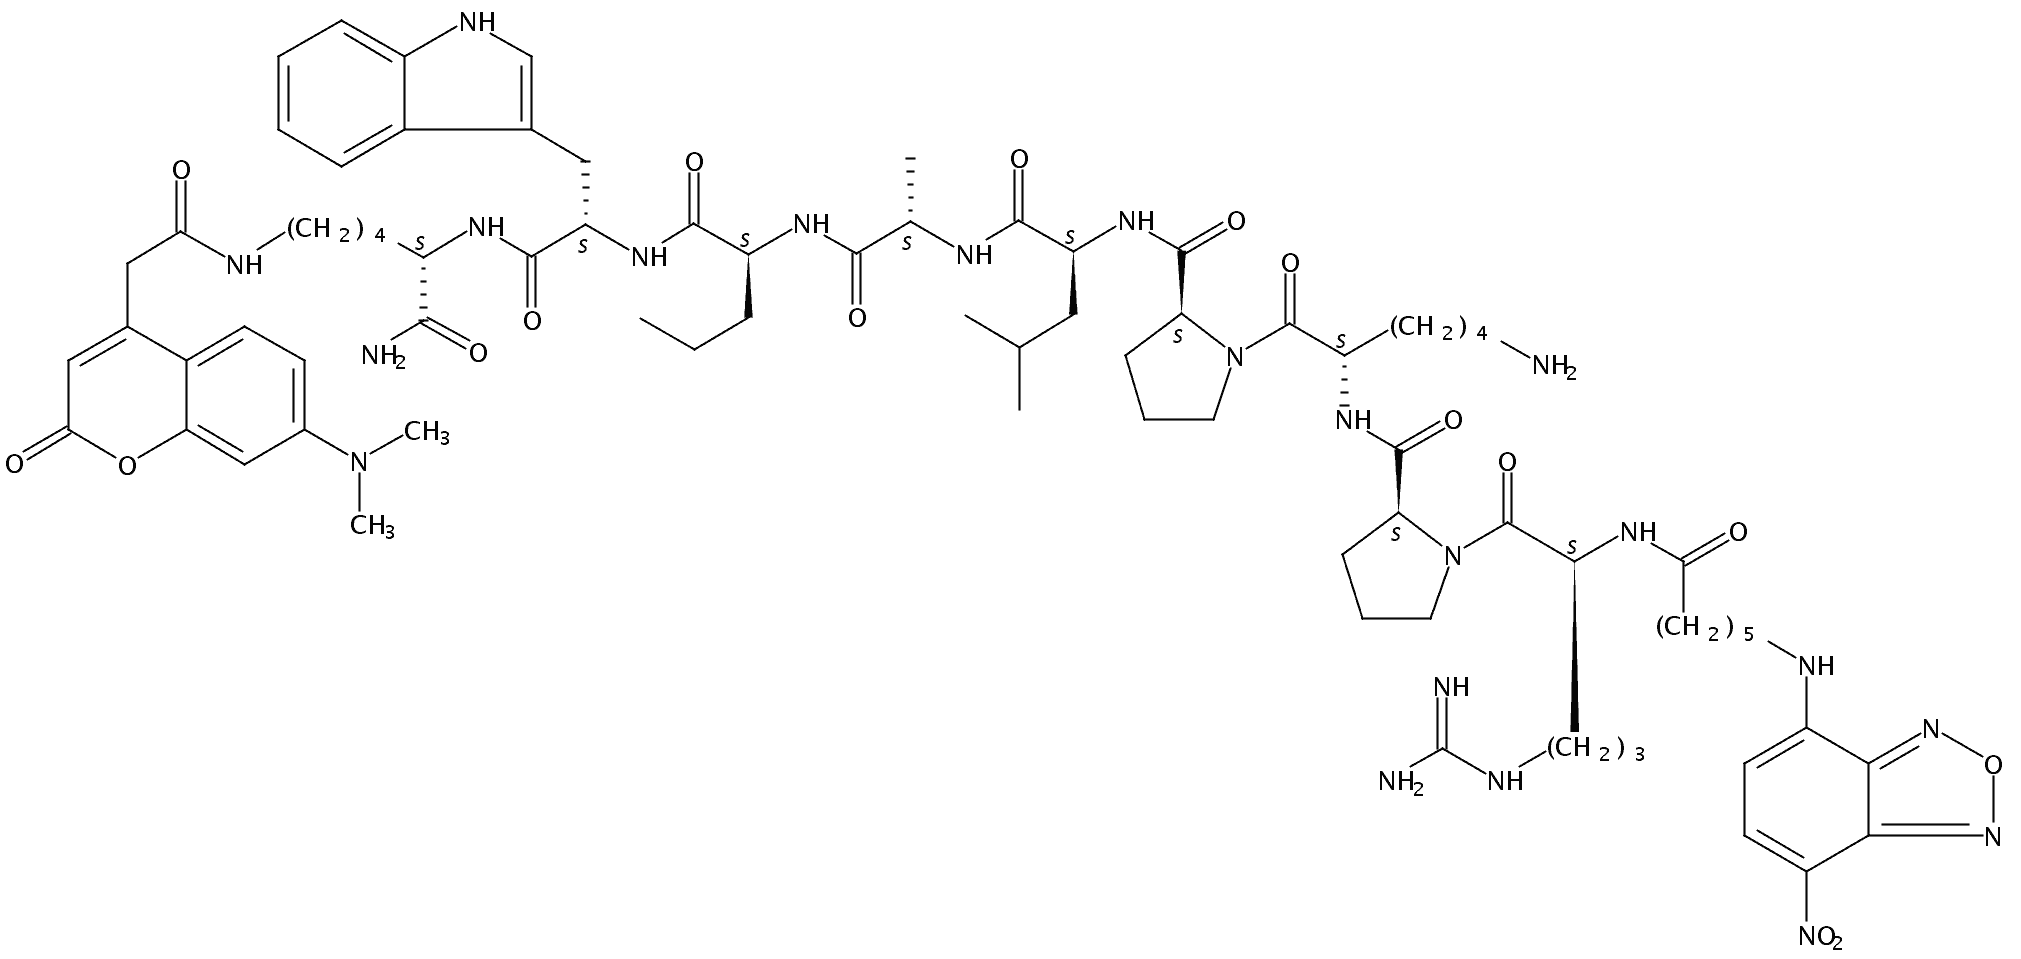 6-(7-Nitro-benzo[2,1,3]oxadiazol-4-ylamino)-hexanoyl-Arg-Pro-Lys-Pro-Leu-Ala-Nva-Trp-Lys((7-dimethylaminocoumarin-4-yl)-acetyl)-NH₂